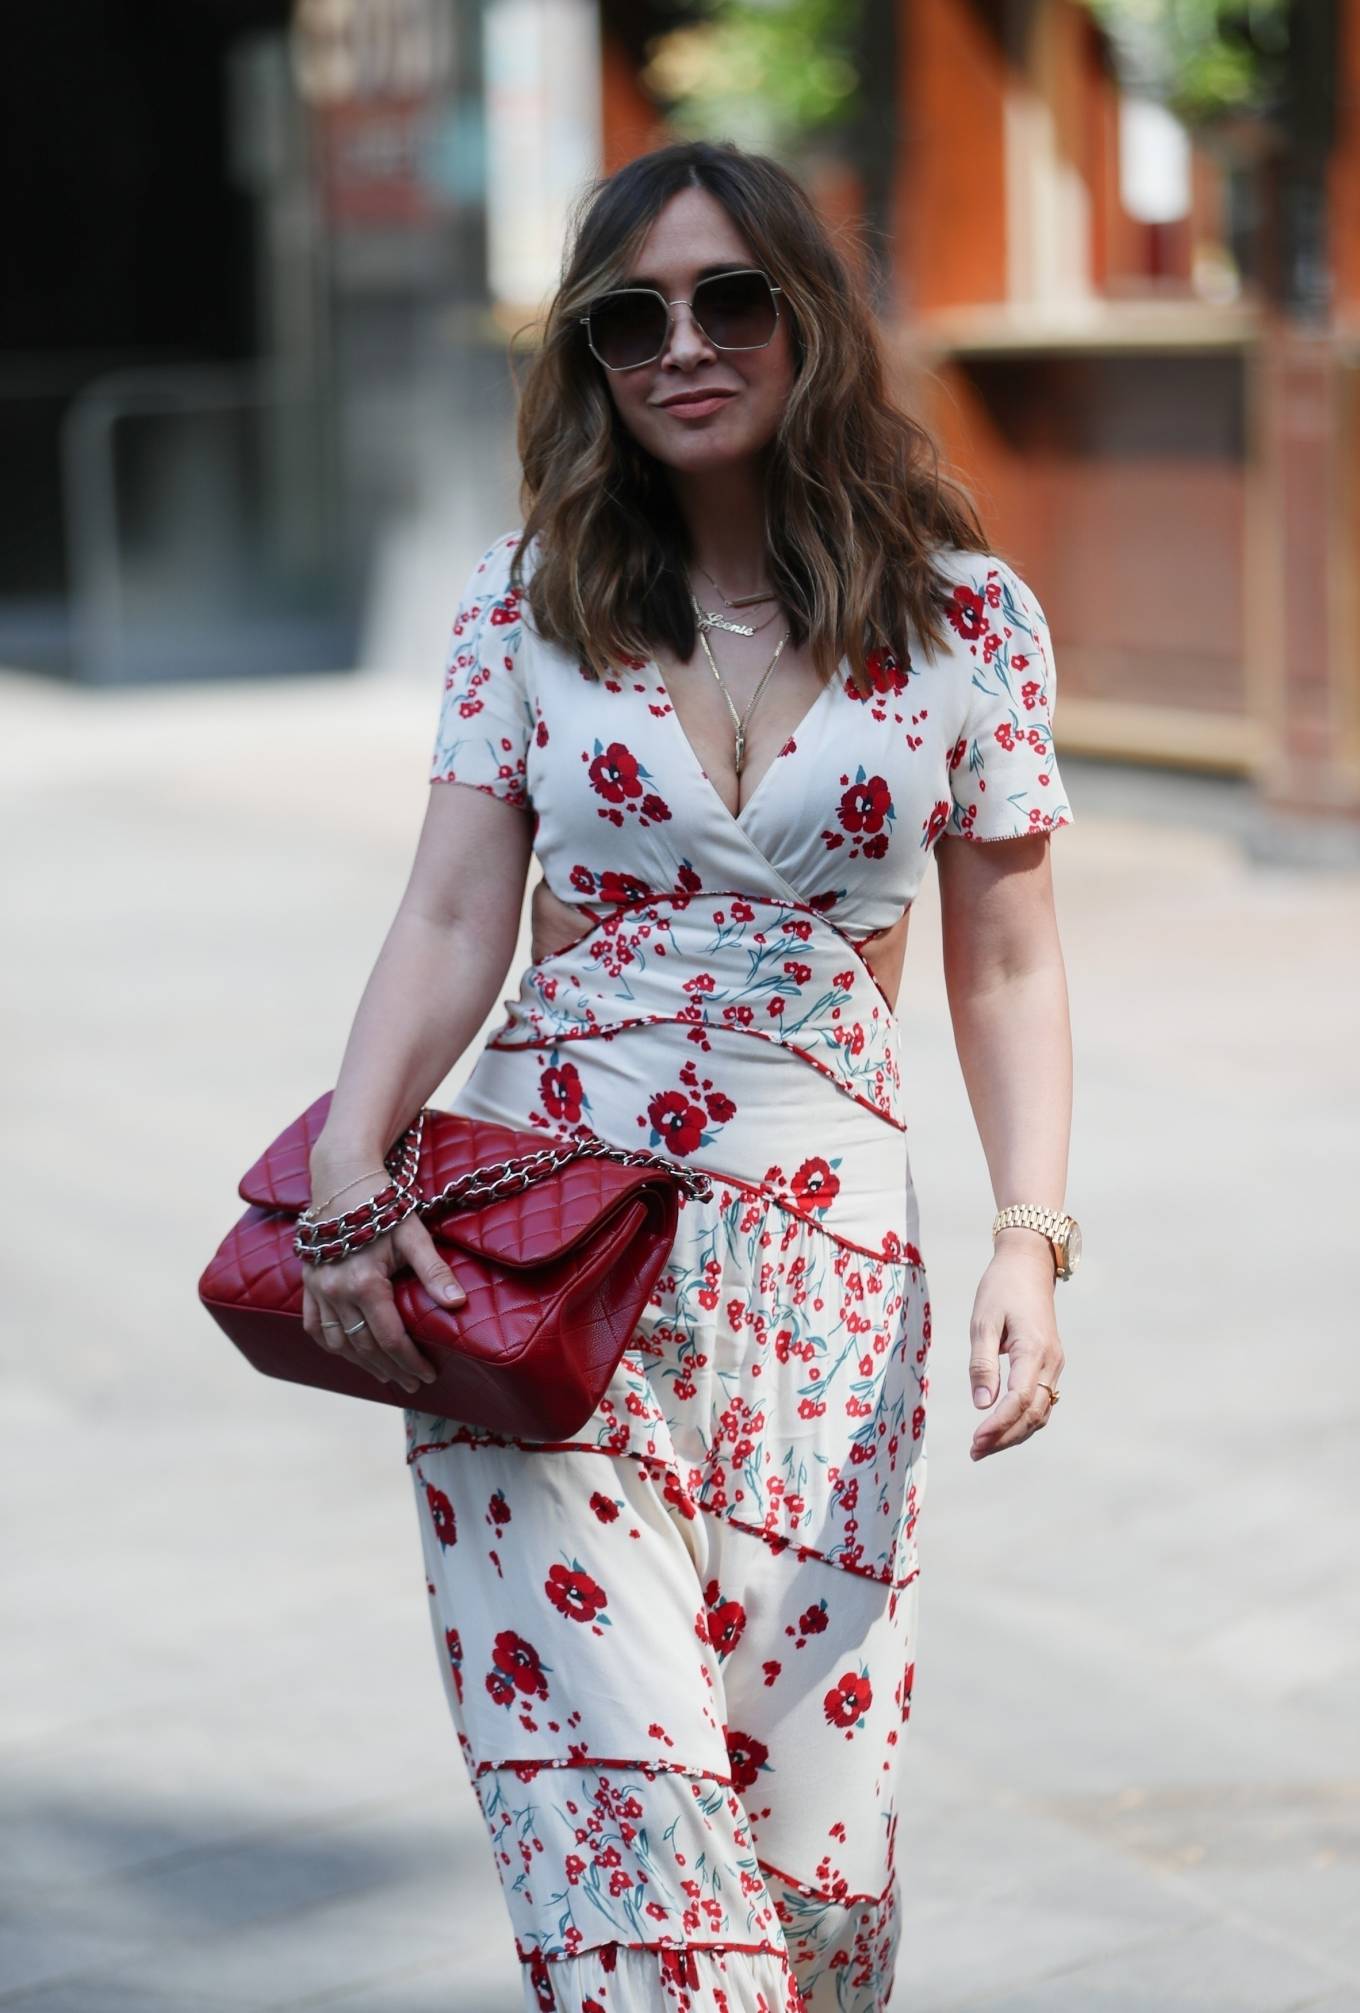 Myleene Klass â€“ Wearing floral dress leaving the Smooth Radio Studios in London